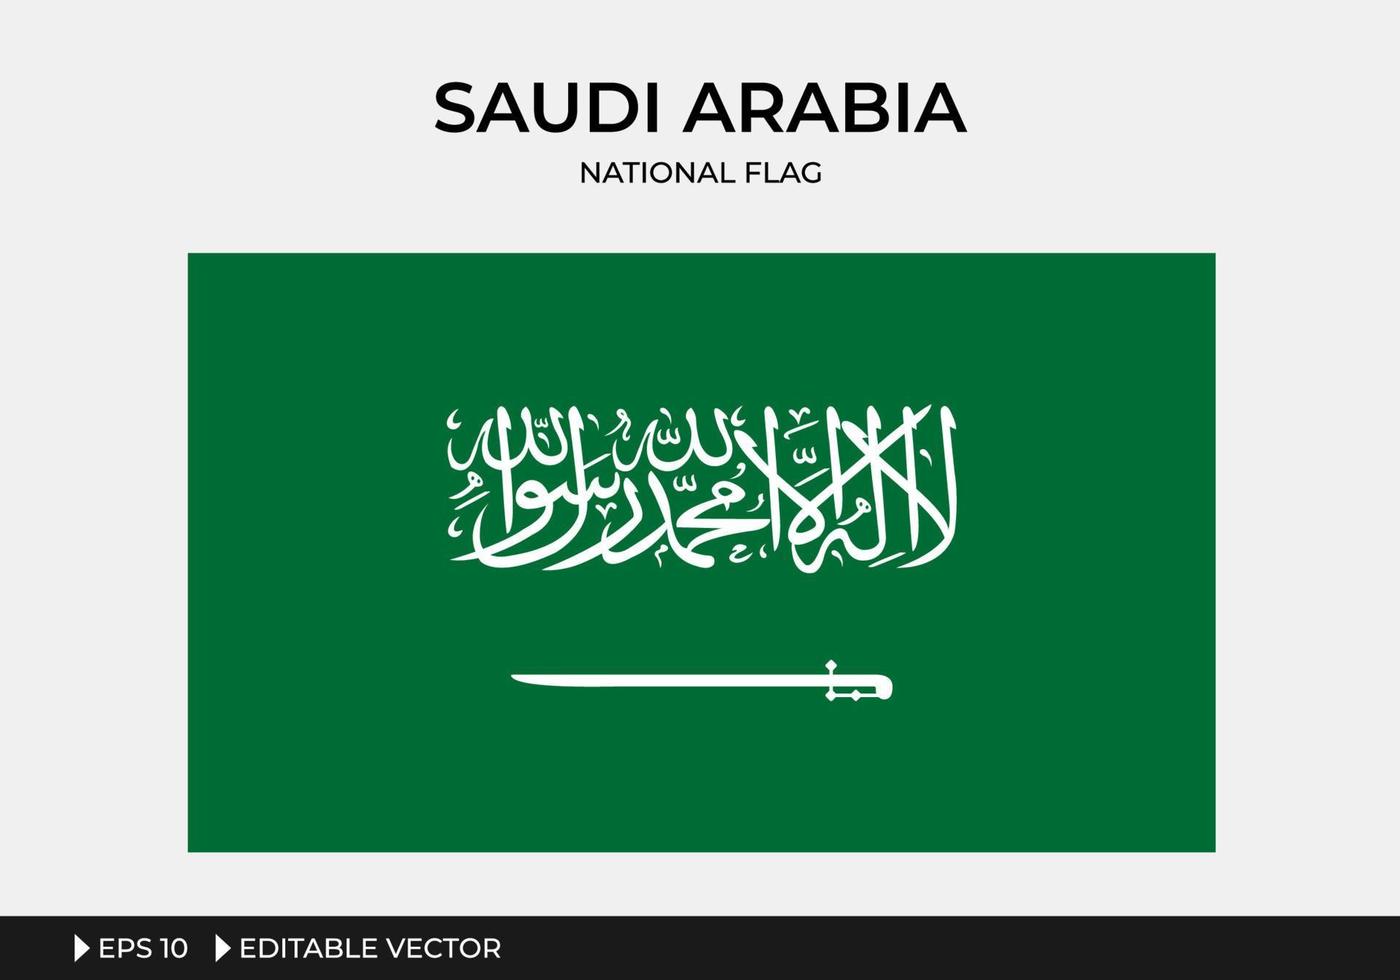 Abbildung der saudi-arabischen Nationalflagge vektor